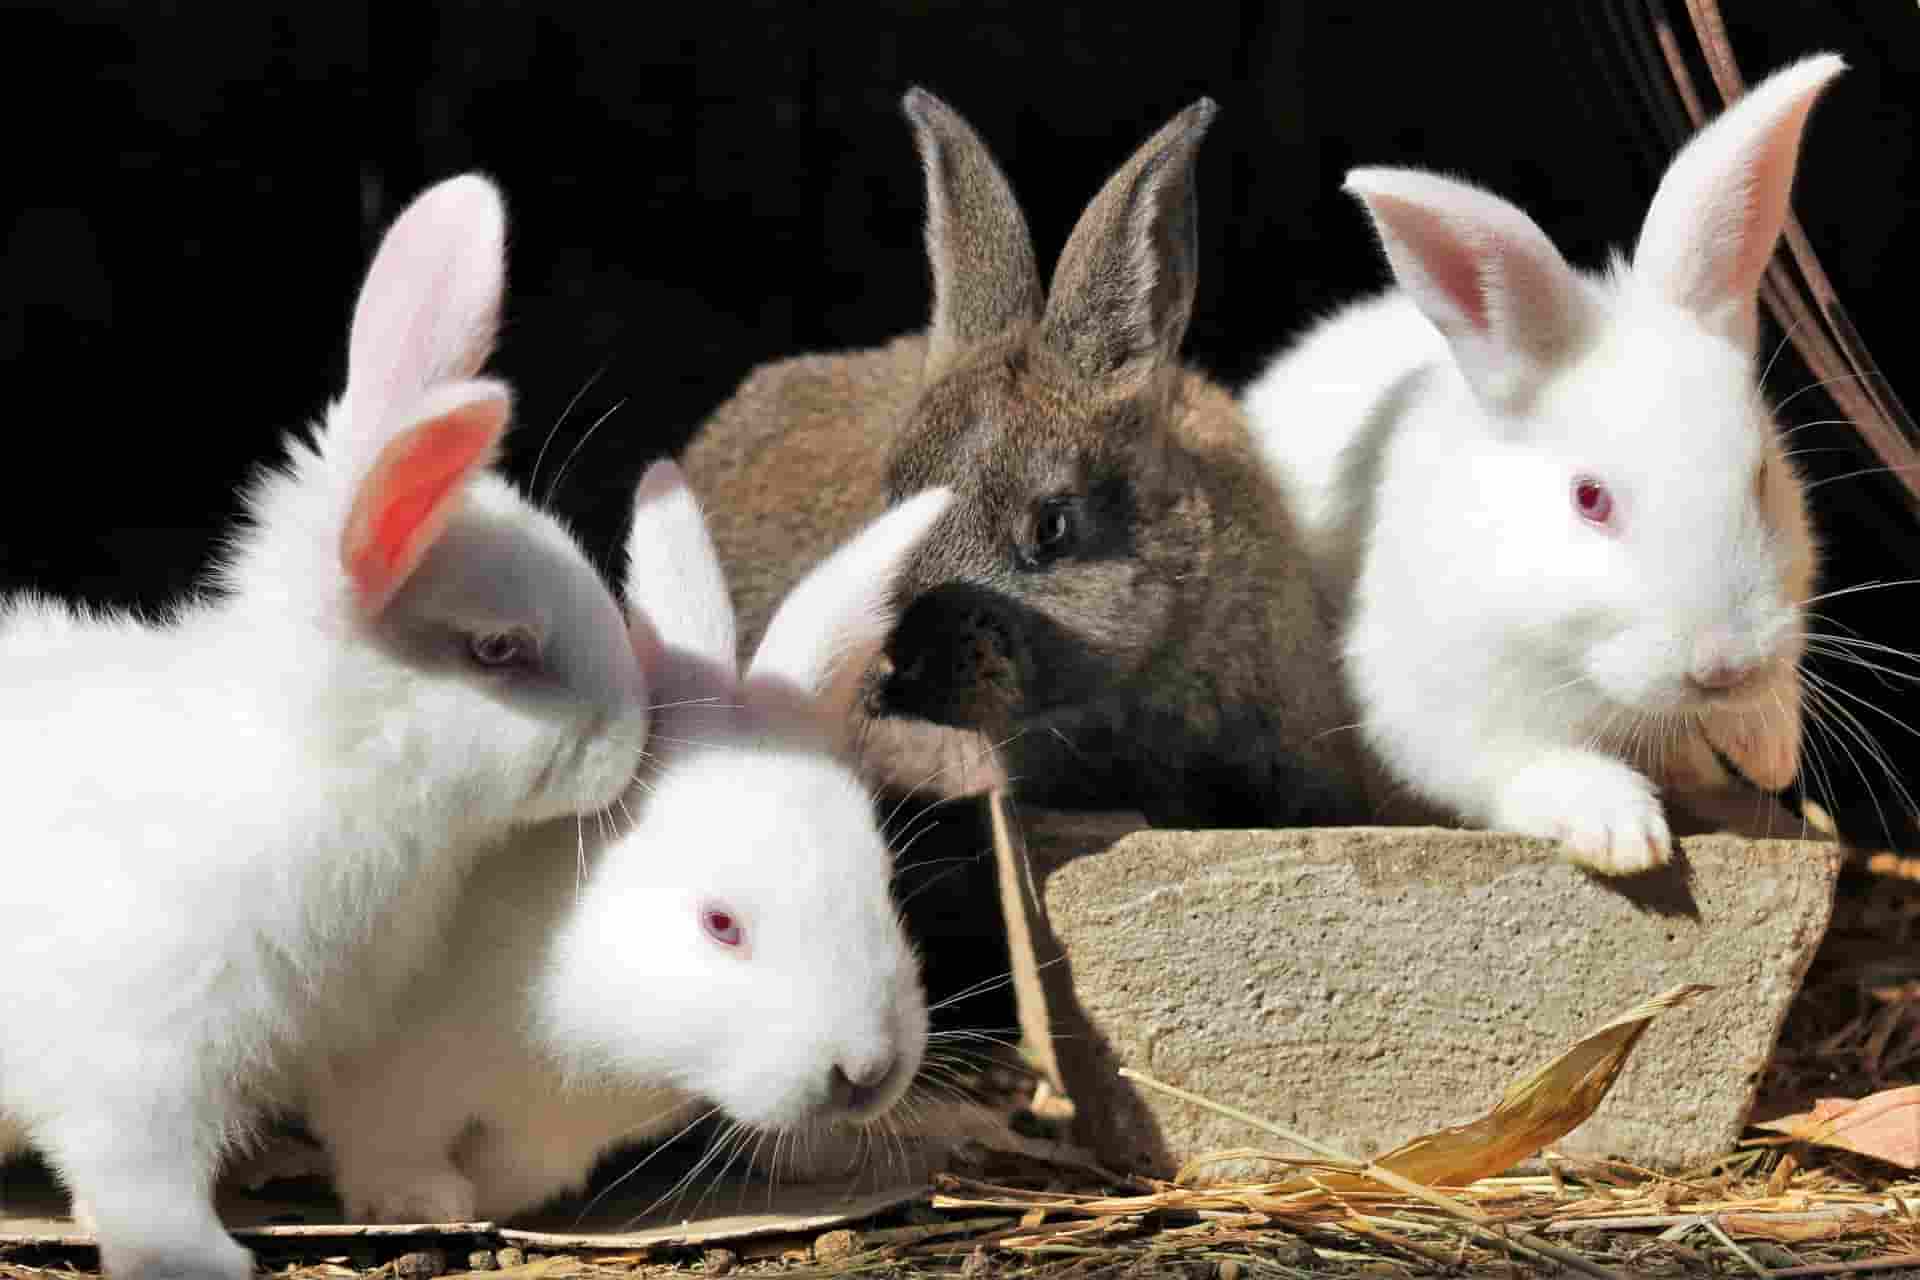 do rabbits eat cantaloupe?